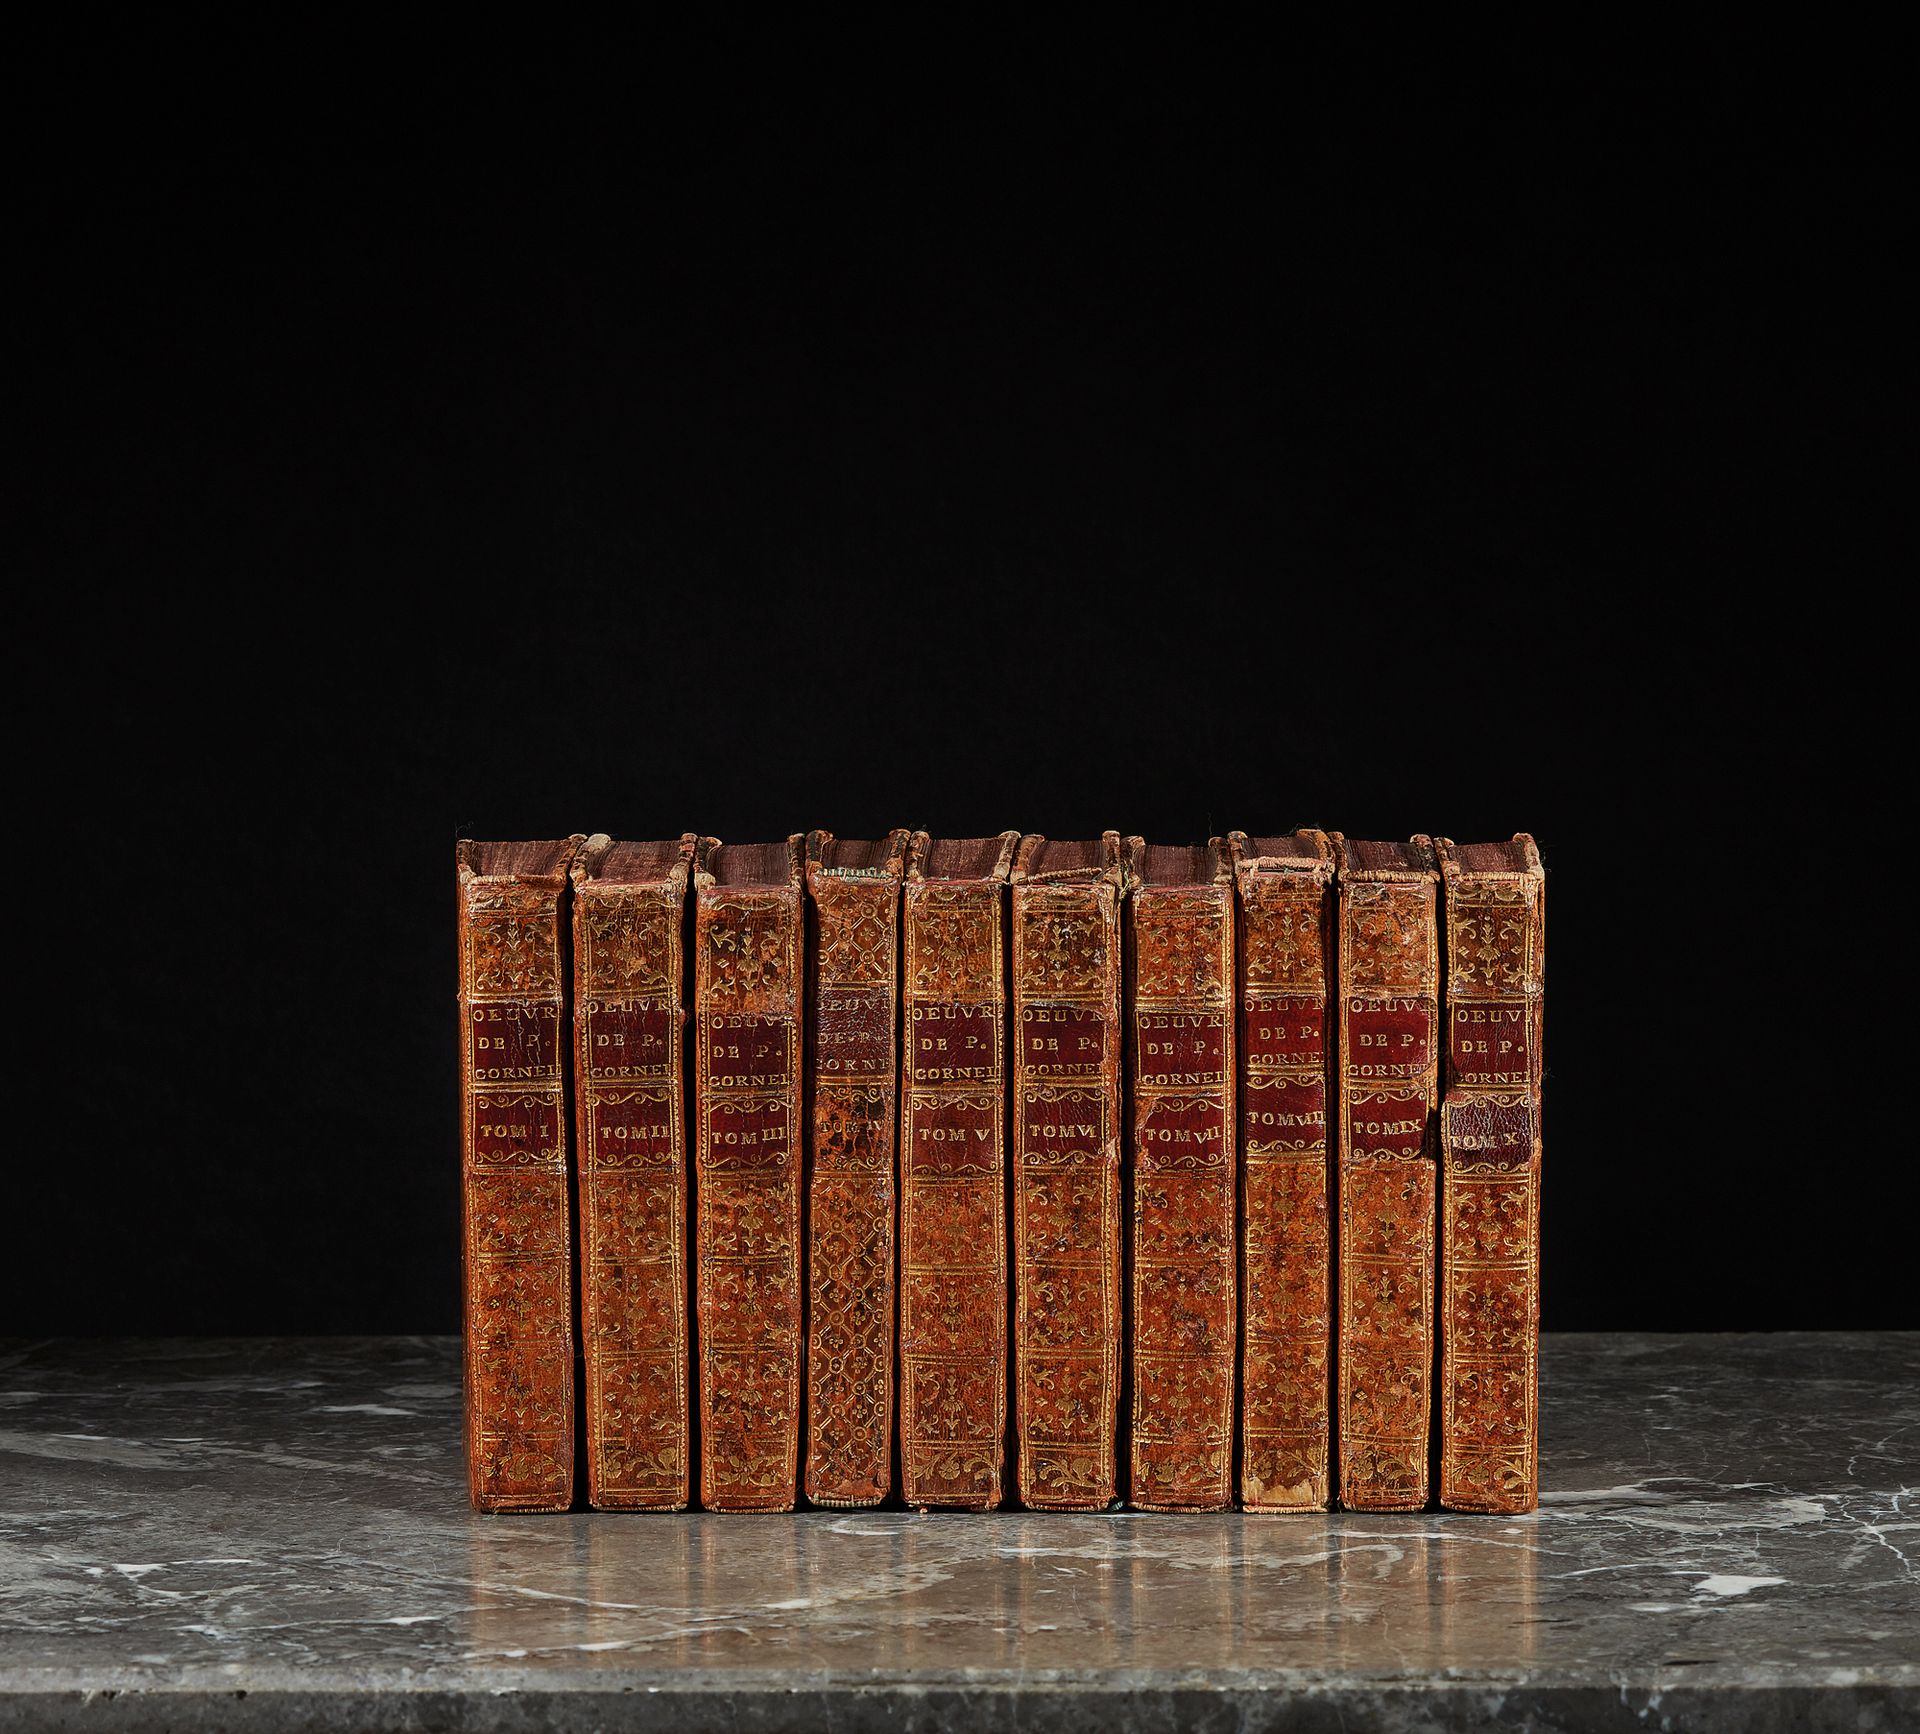 CORNEILLE 作品。10卷，12页全小牛皮，光滑的书脊上有装饰，有标题页和页眉。18世纪